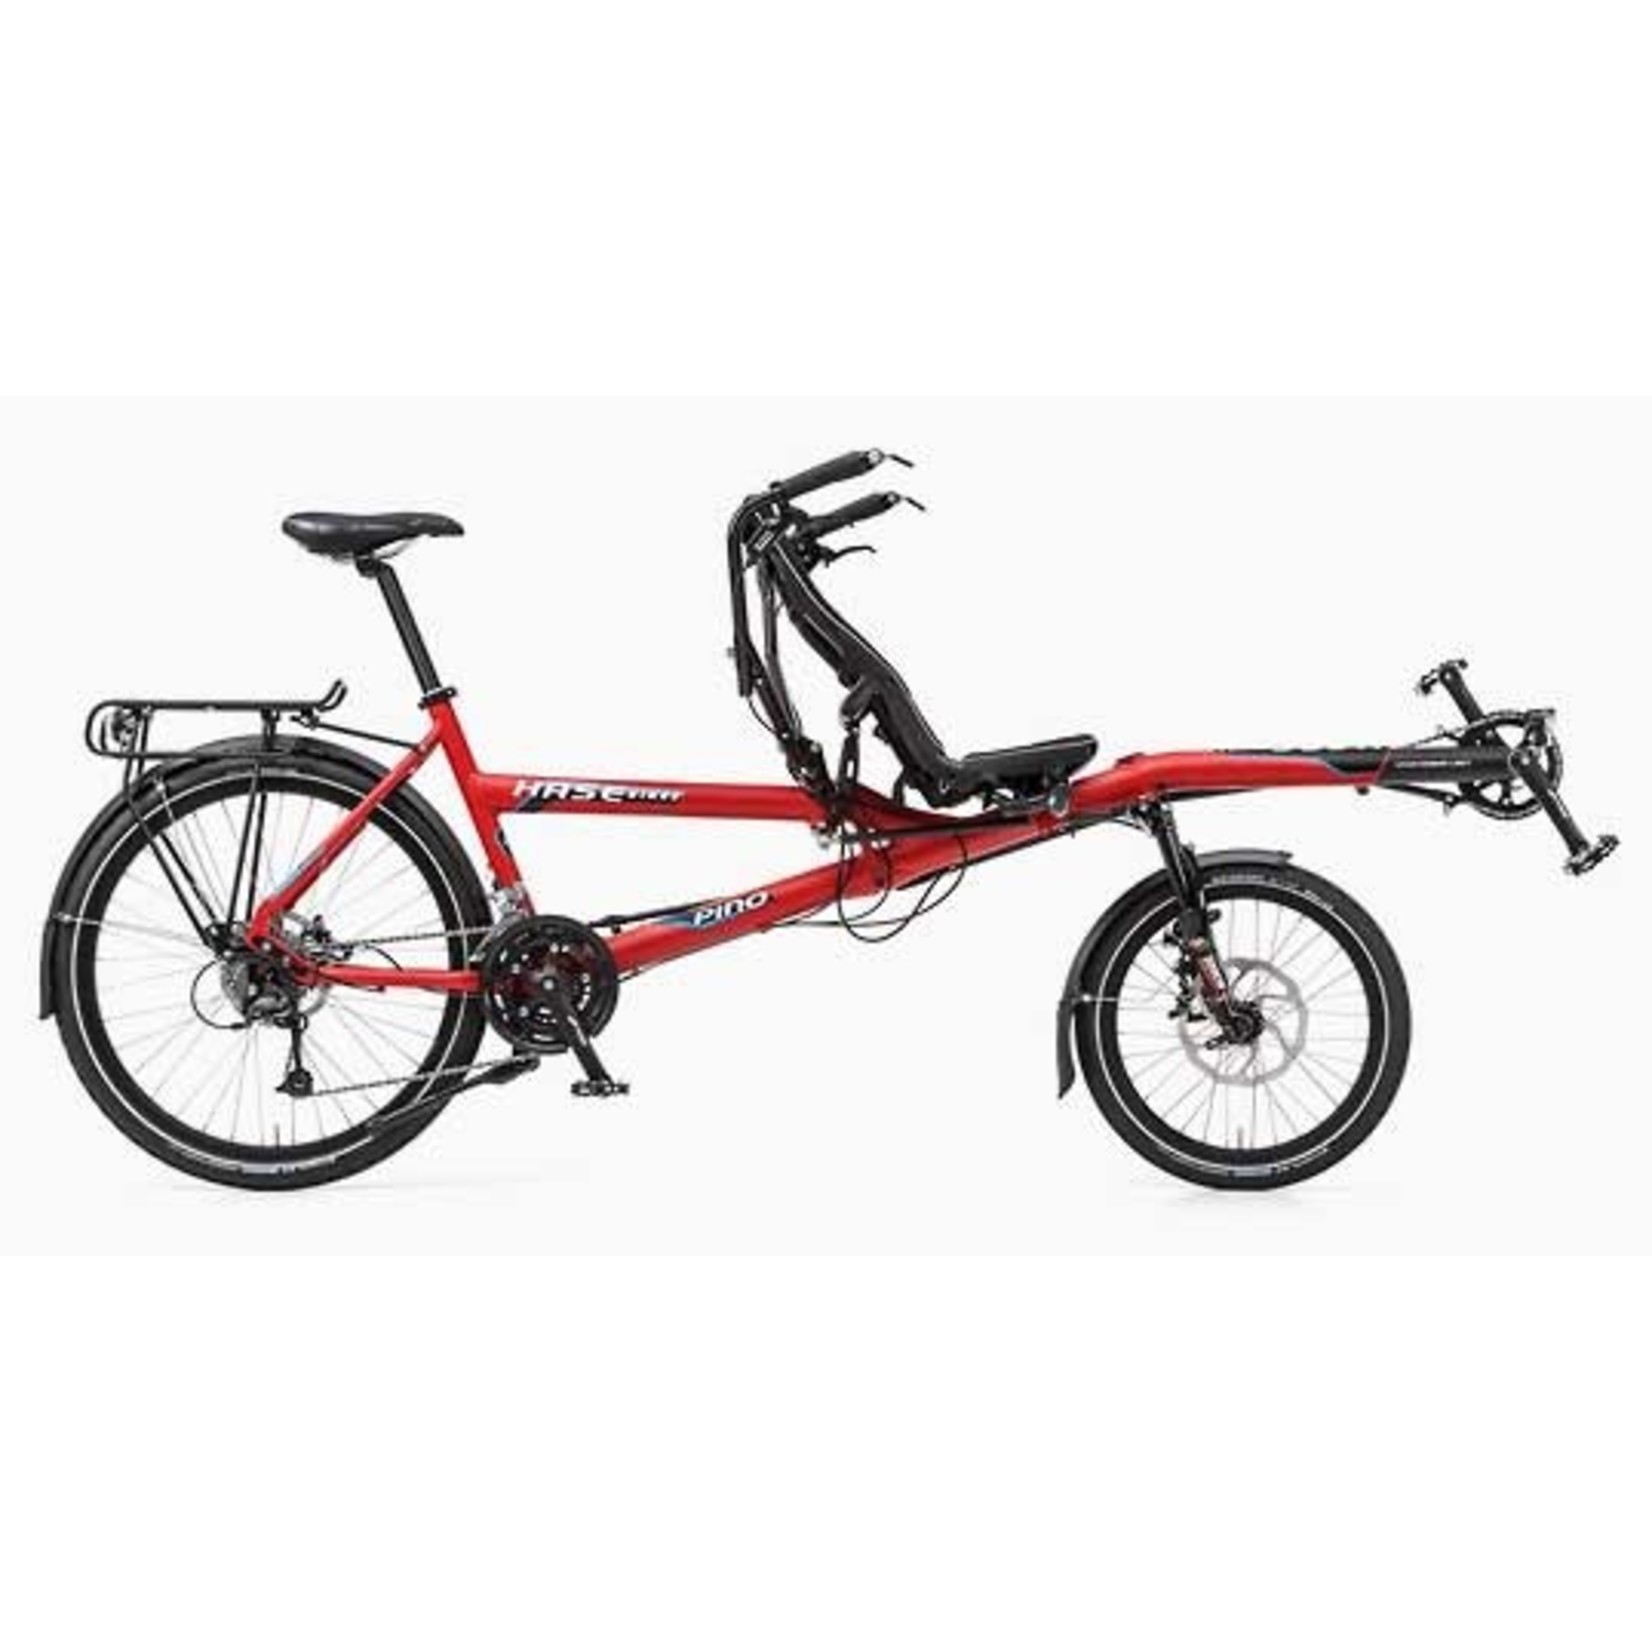 Hase Pino Allround 2020 (Red) - Bike Swift